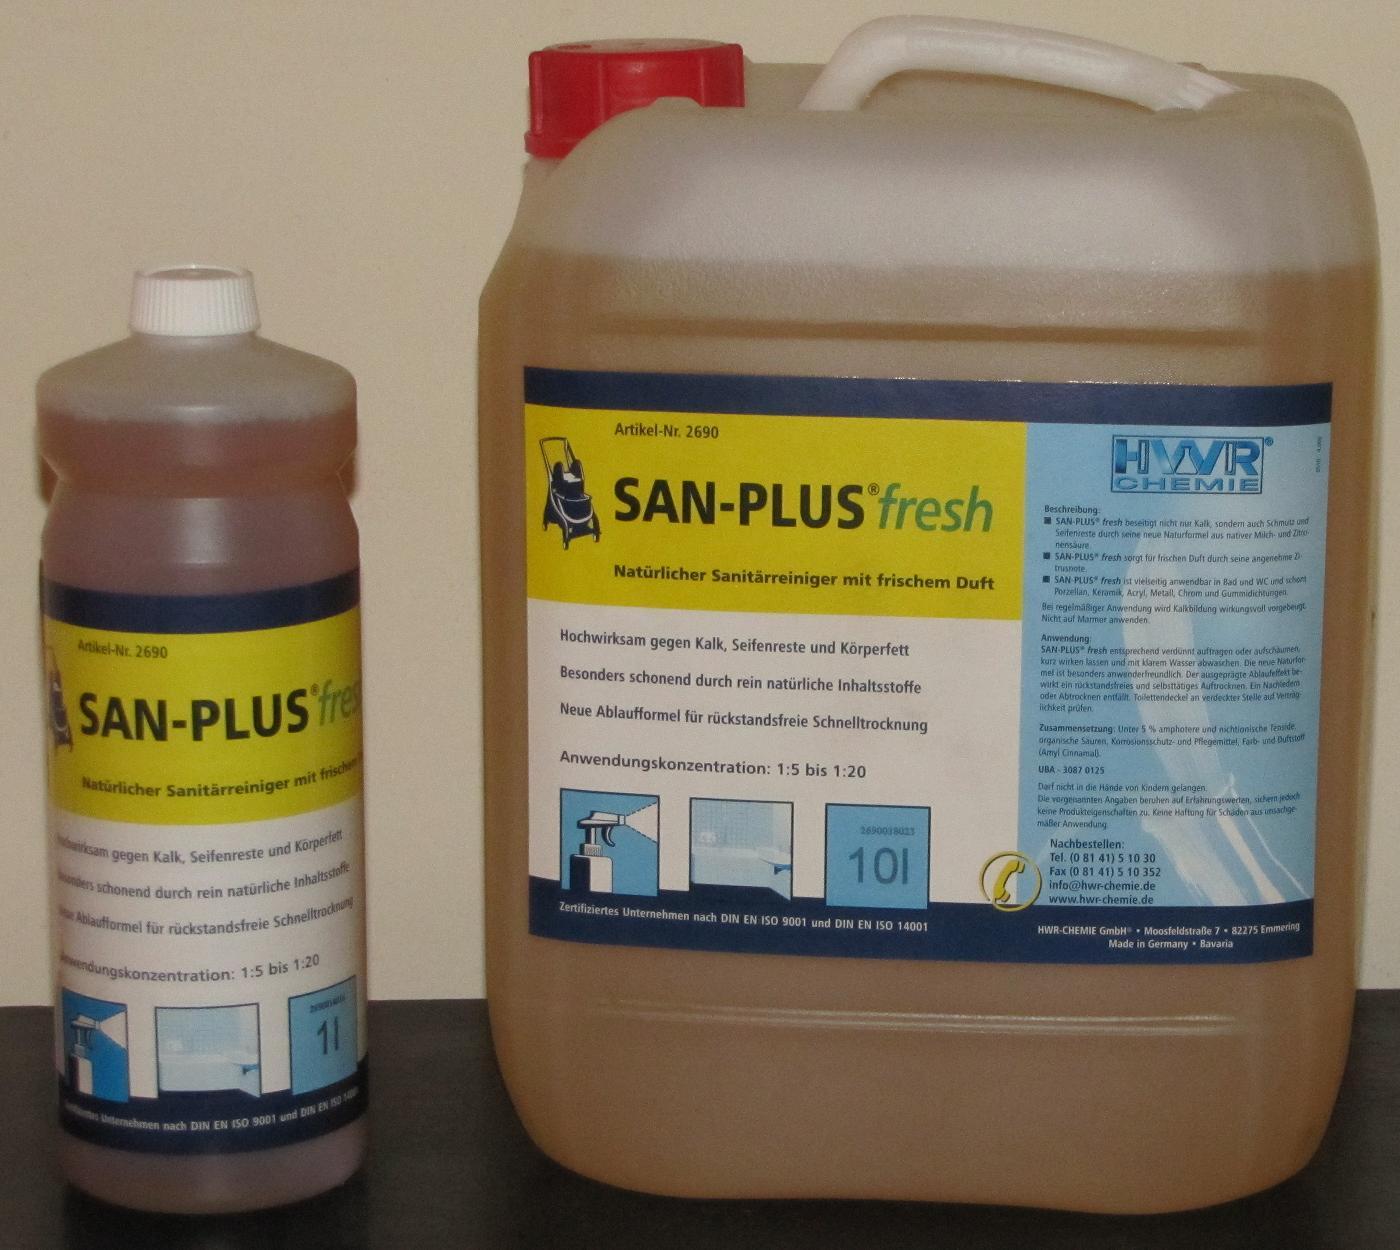 SAN-PLUS FRESH - opakowanie 1 i 10 litrowe